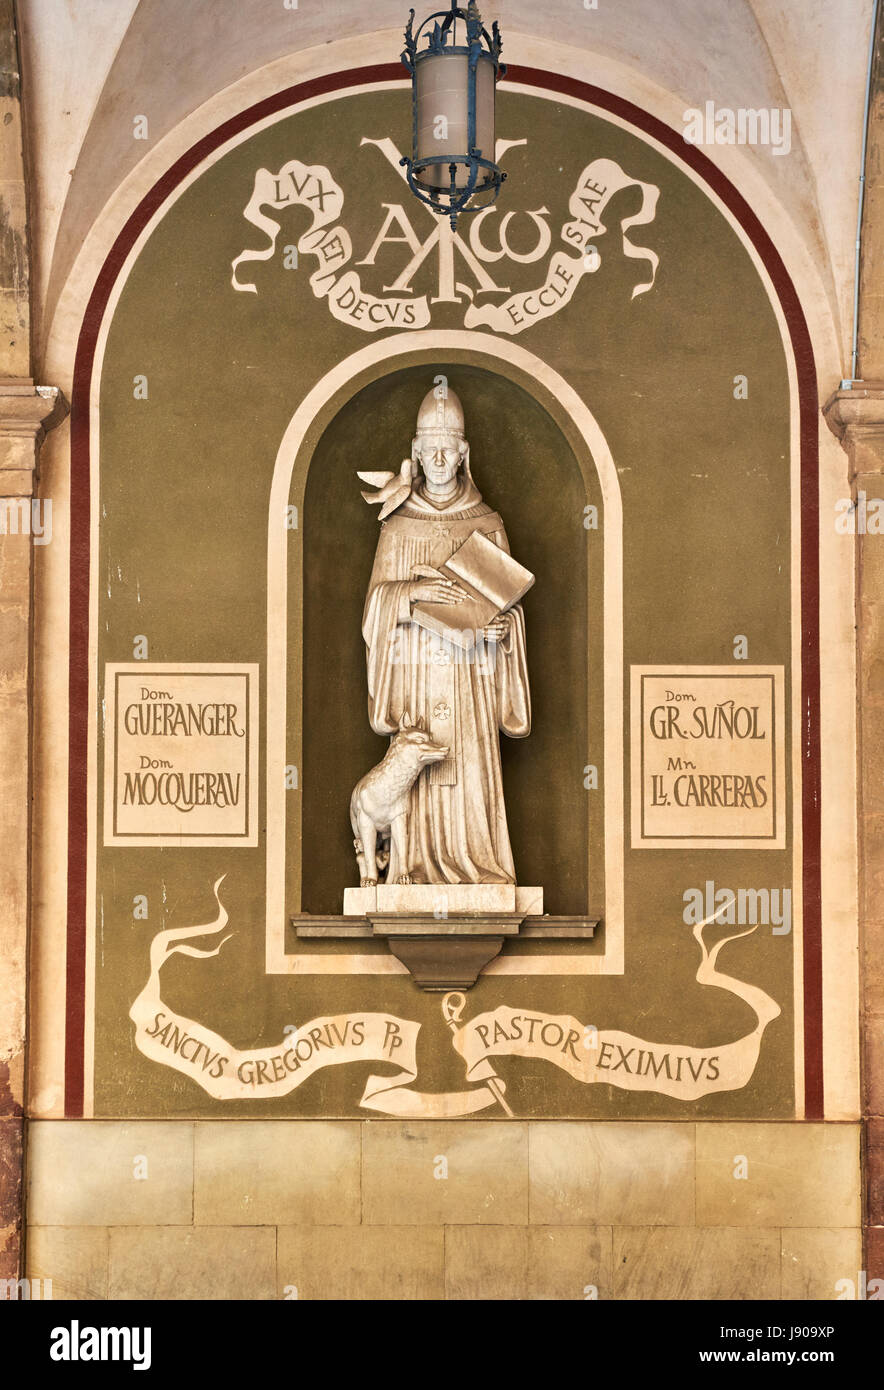 Montserrat, Espagne - 6 Avril 2016 : Sculpture de Gregori Maria Sunyol au monastère bénédictin de Santa Maria de Montserrat, près de Barcelone. Espagne Banque D'Images